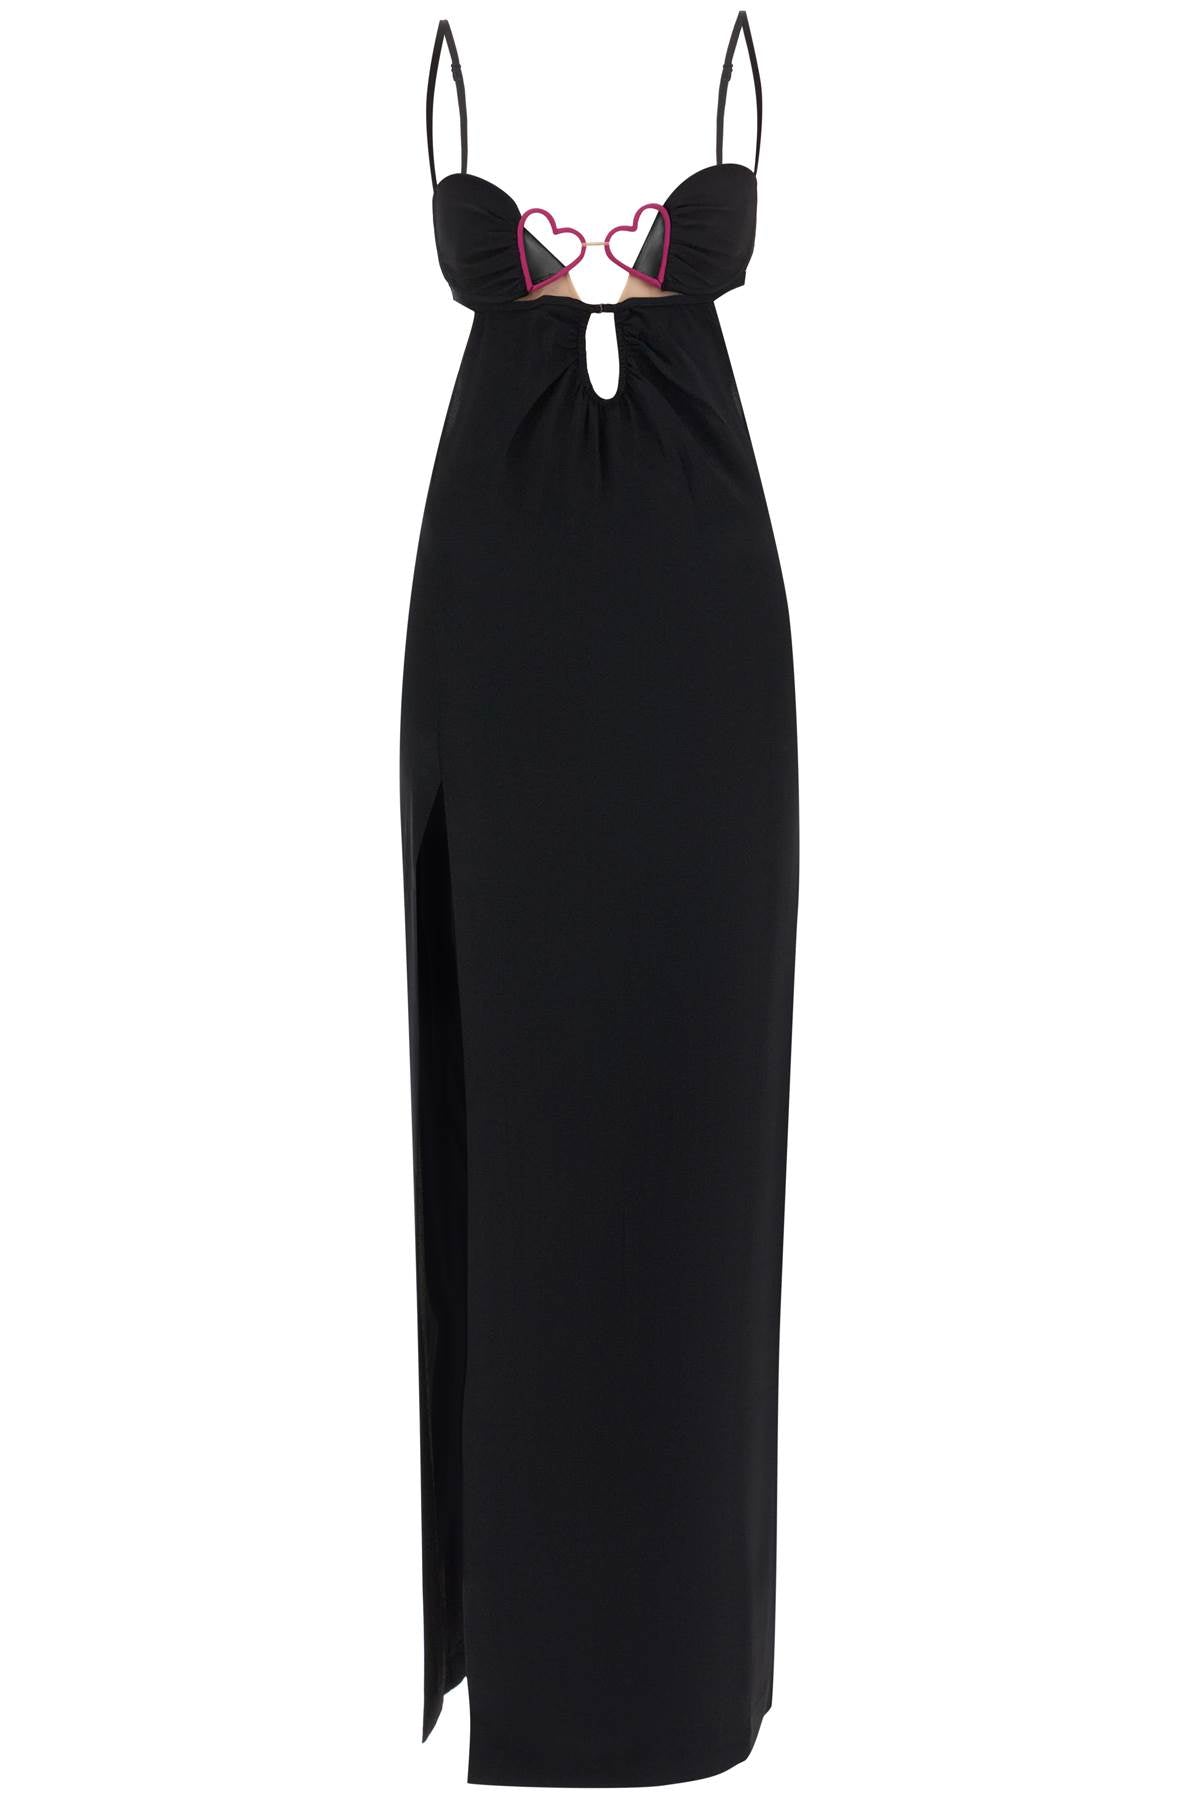 Nensi Dojaka Heart Detail Long Dress Black